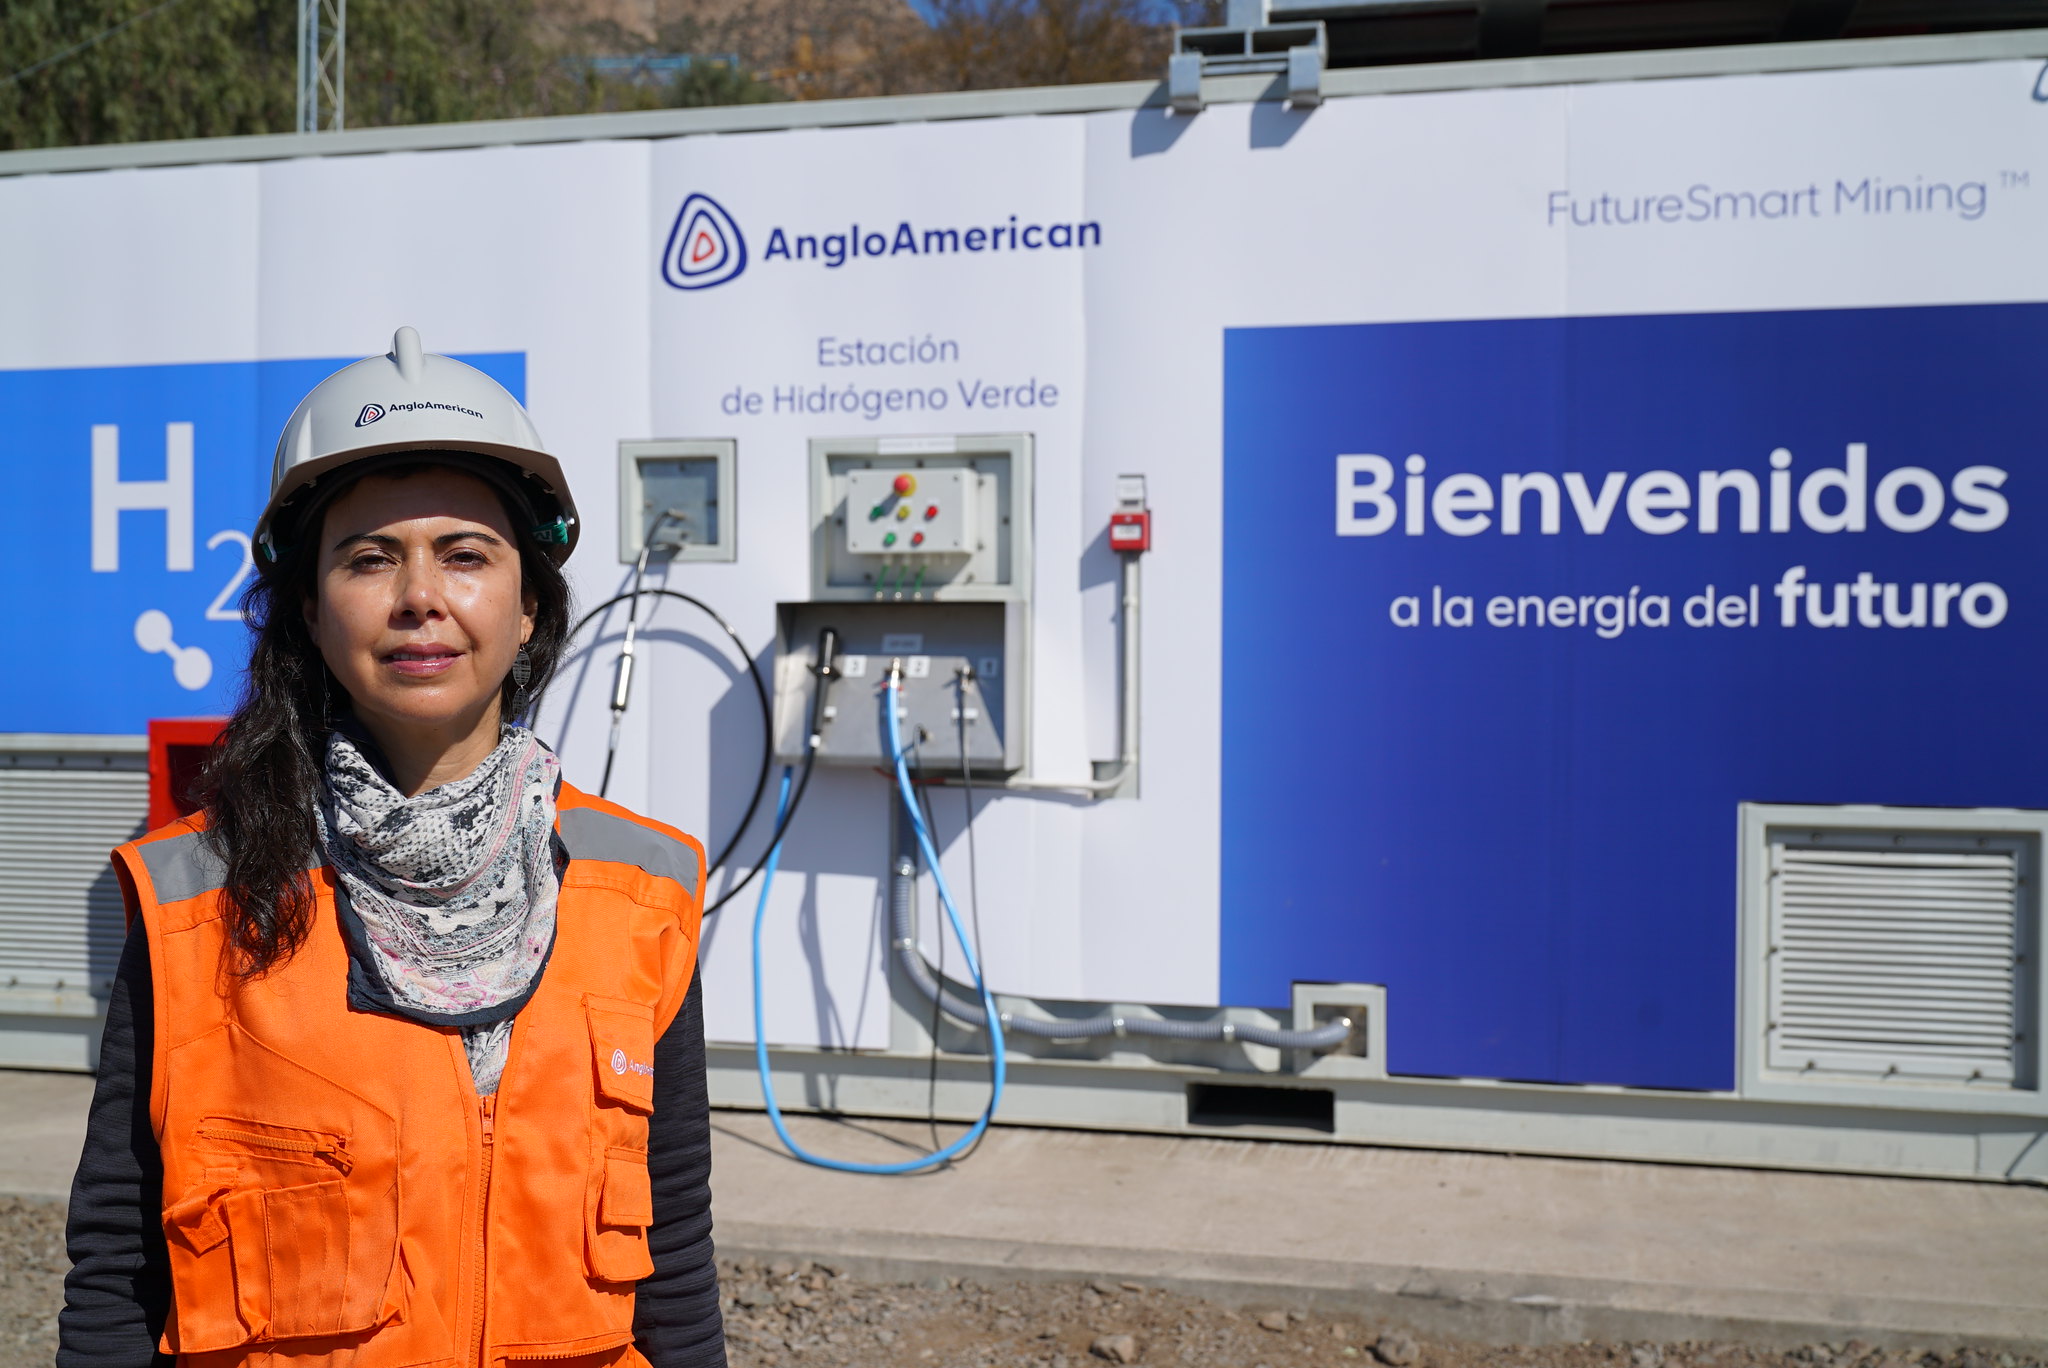 Módulo gerador de hidrogênio da planta de flotação Las Tórtolas, da mineradora Anglo American, no Chile (Foto: Divulgação)